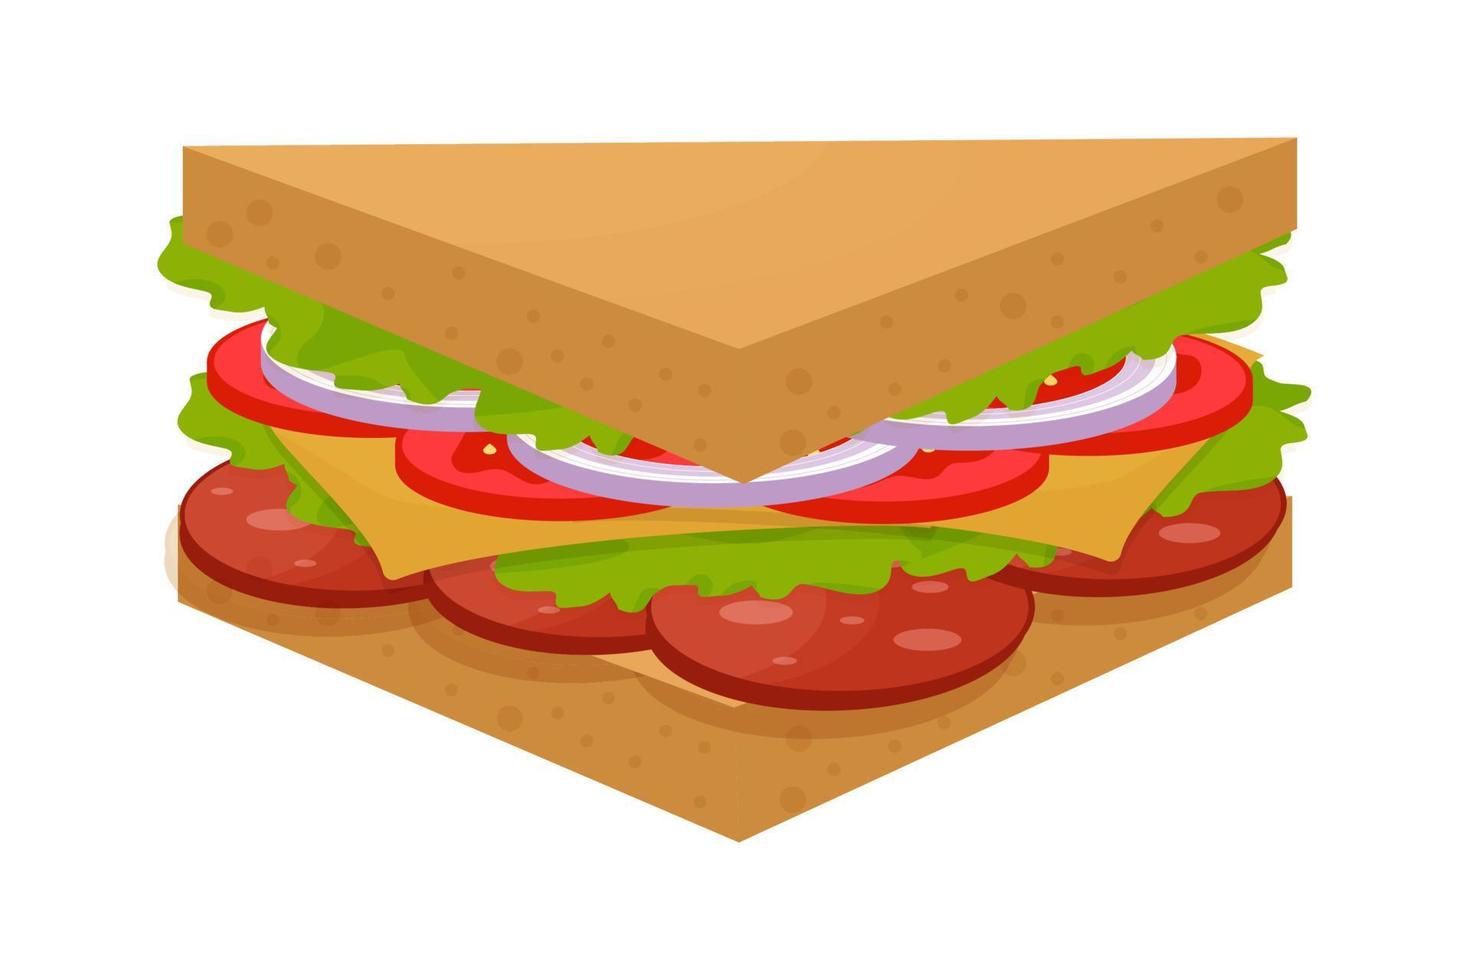 sabroso, delicioso sándwich triangular, colorido y detallado aislado en fondo blanco. ingredientes de salami, hojas verdes, tomate, queso y cebolla. ilustración vectorial vector